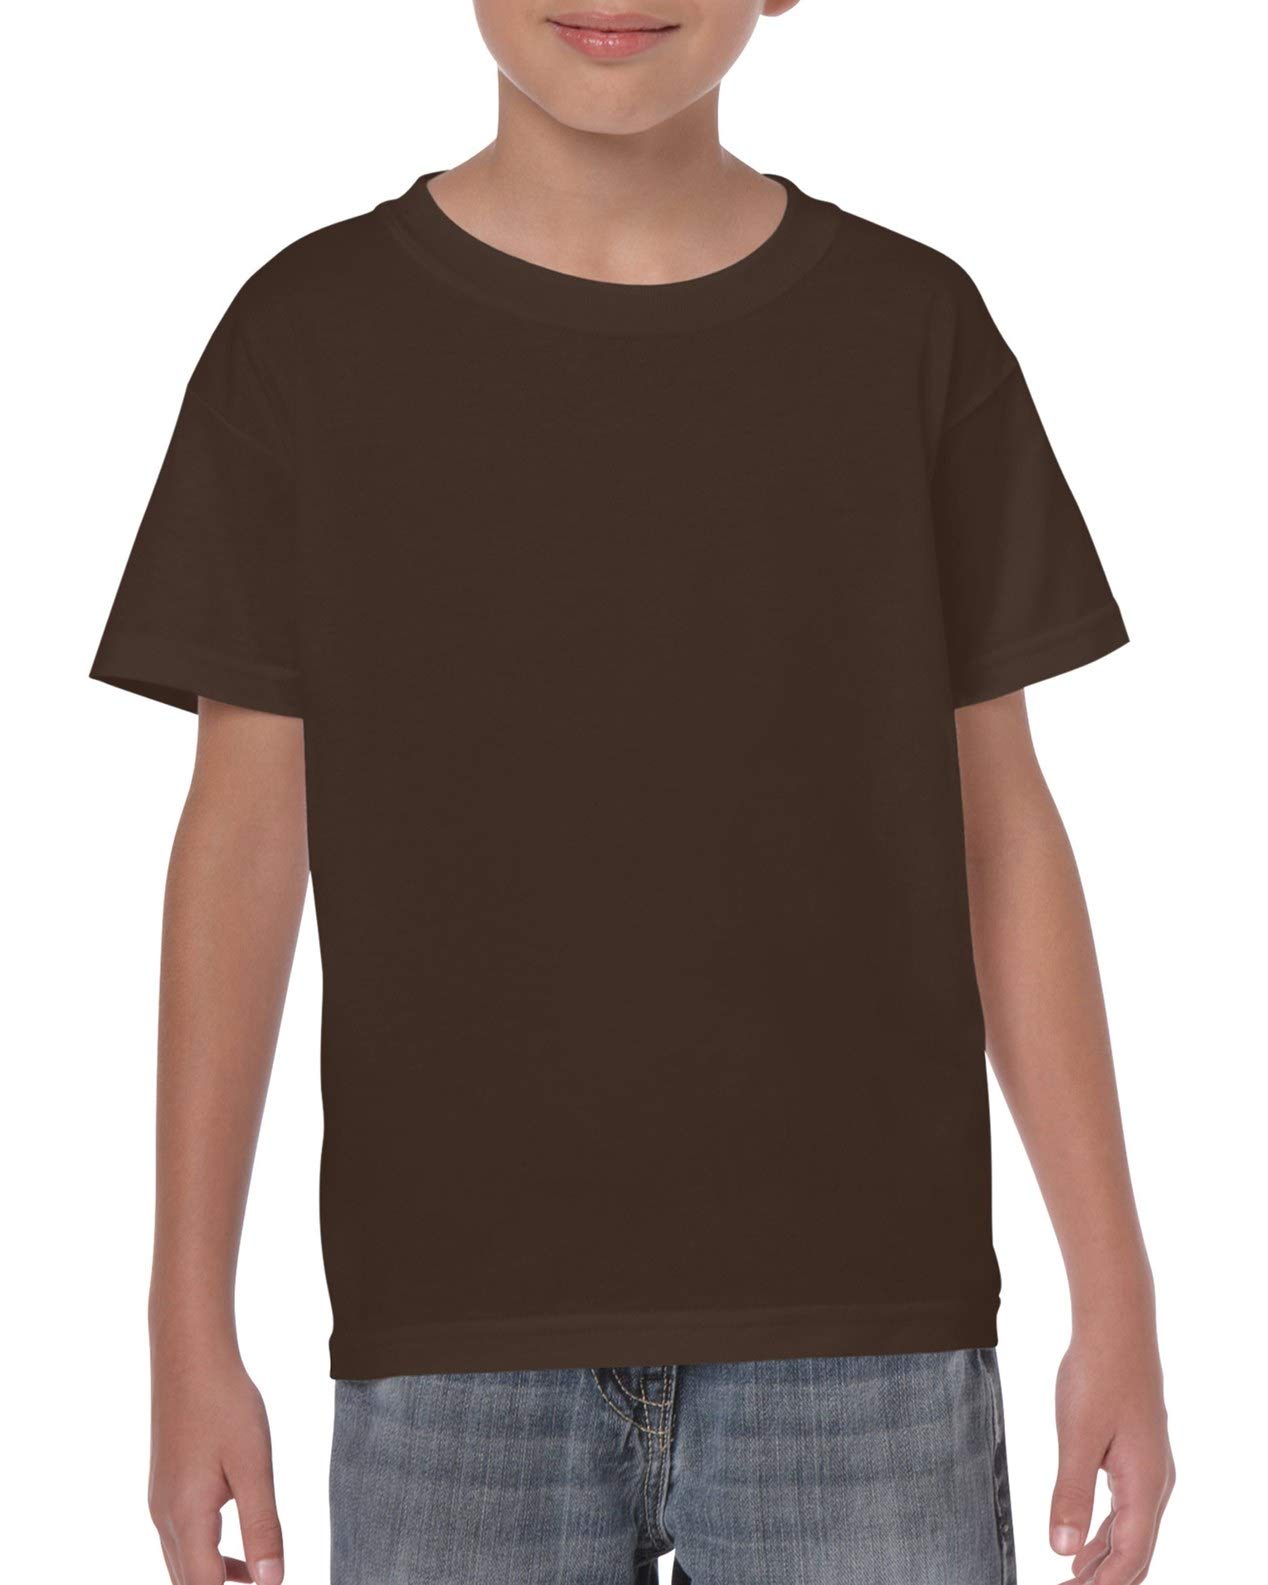 Gildan Boy's Cotton Crew Neck Tee Shirt